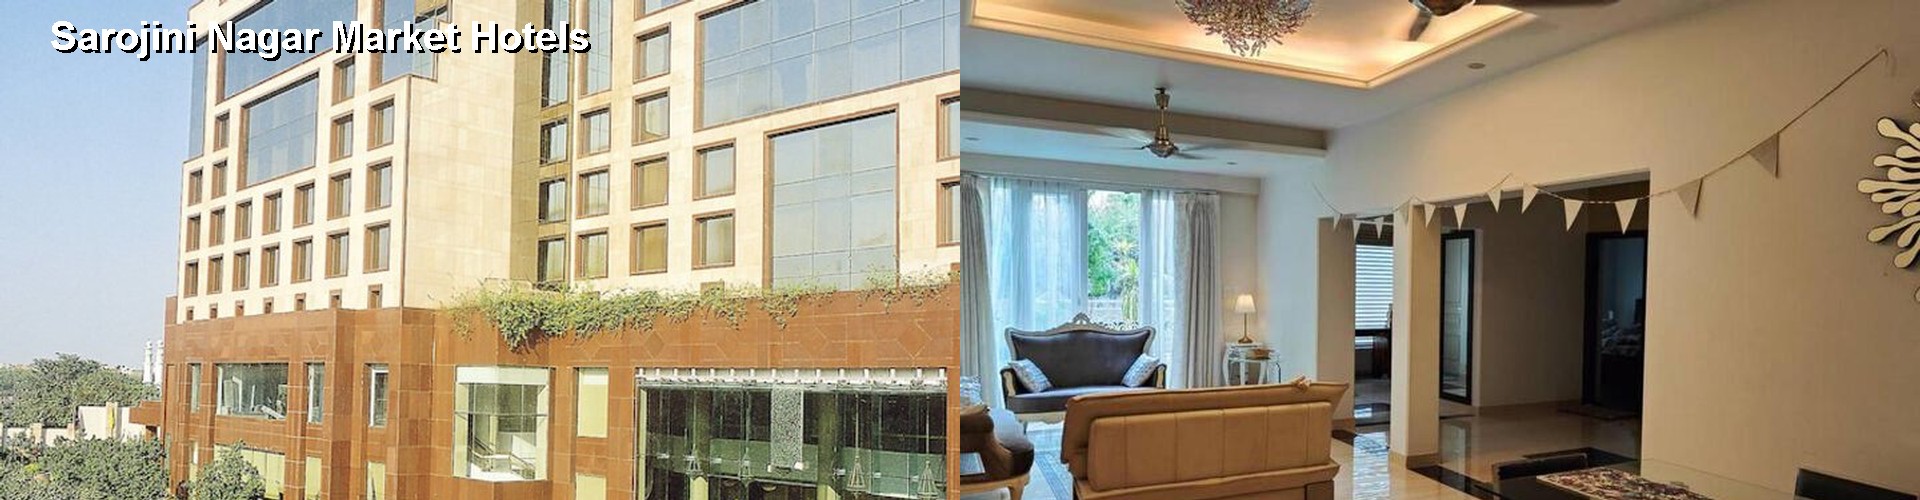 5 Best Hotels near Sarojini Nagar Market